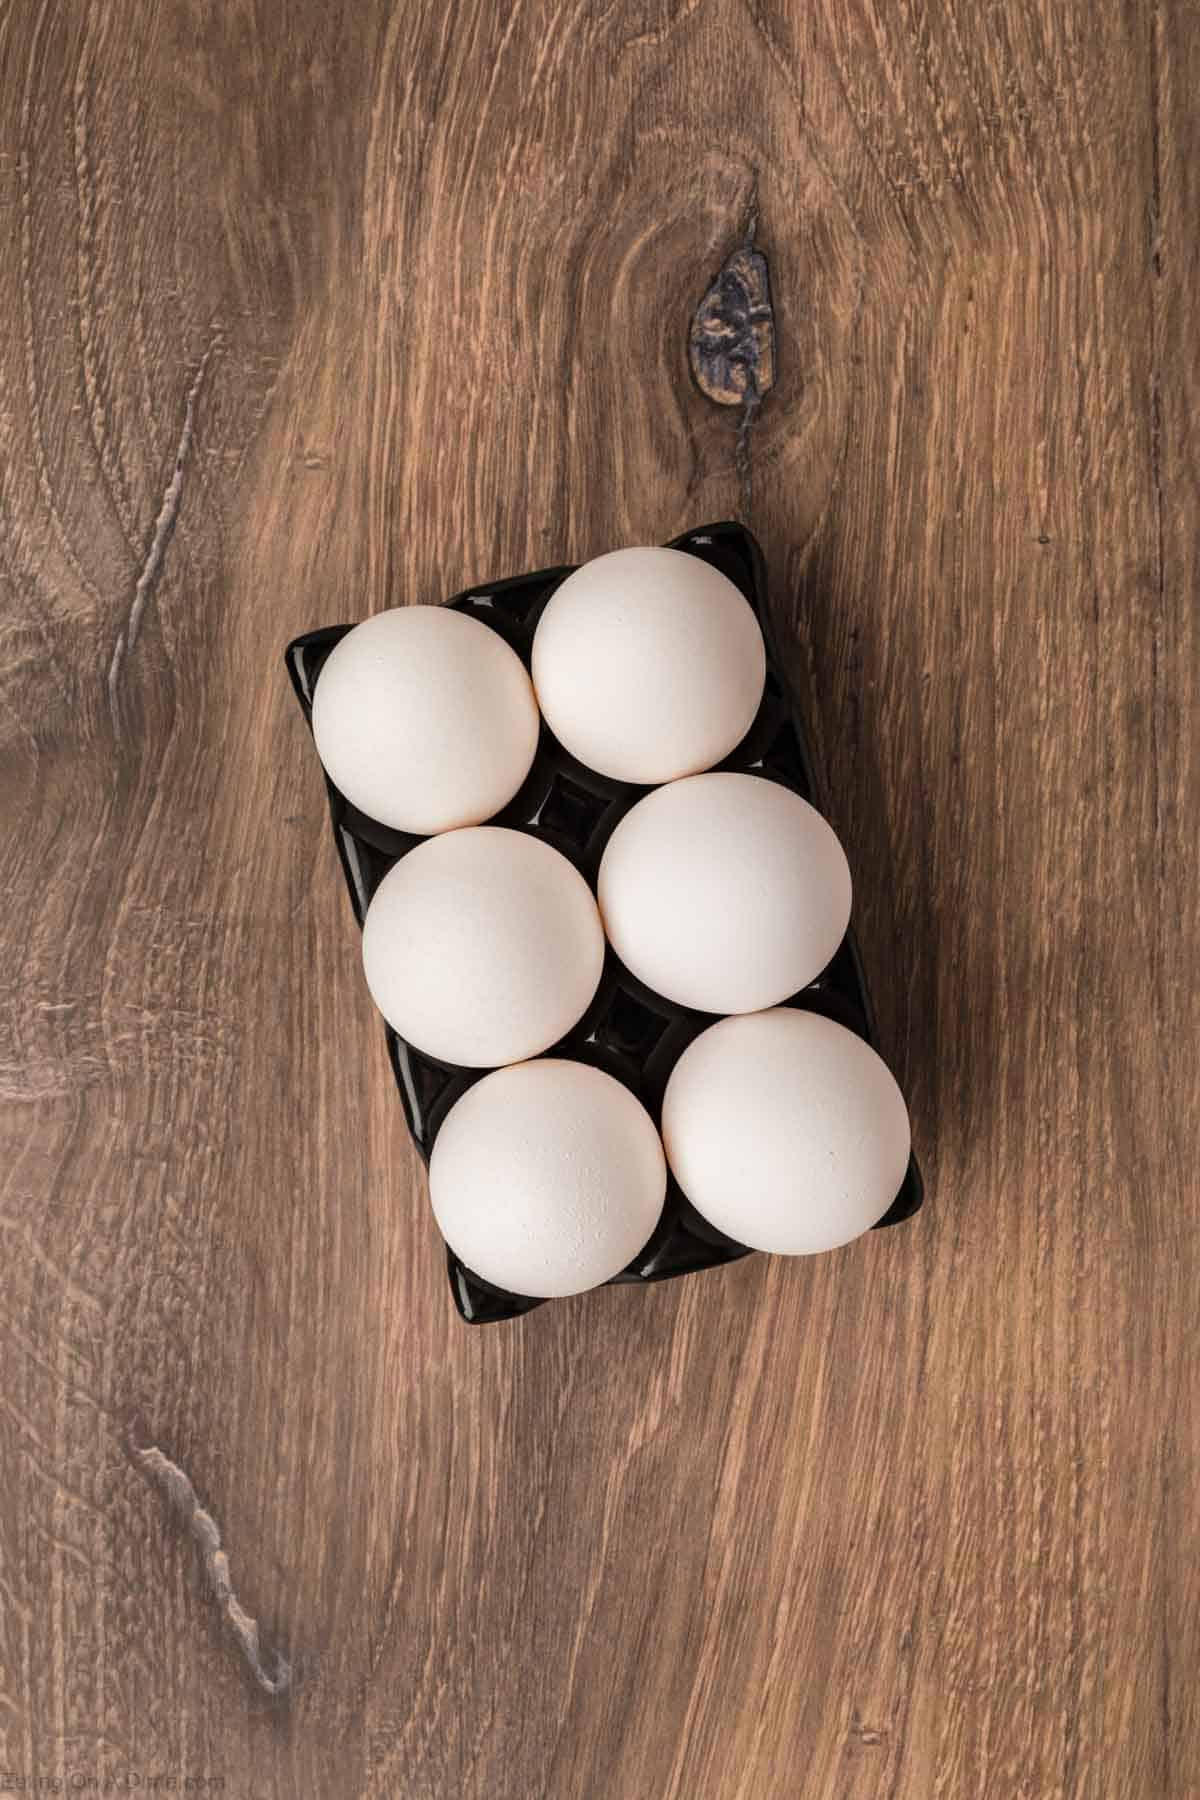 Eggs on a carton